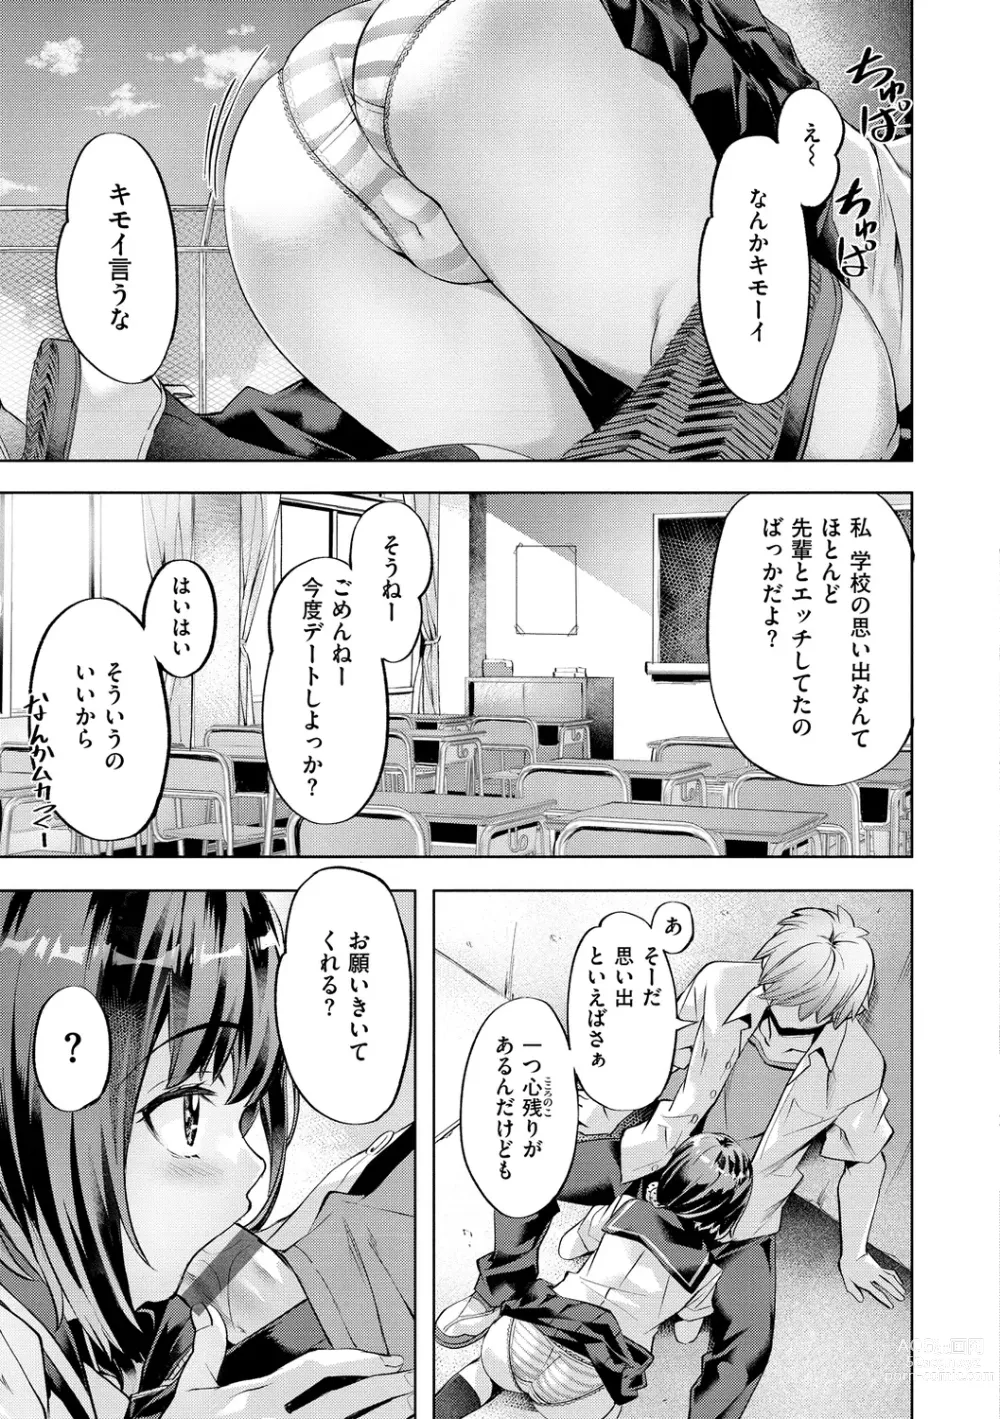 Page 7 of manga Binetsu Emotion - Sensual Emotion